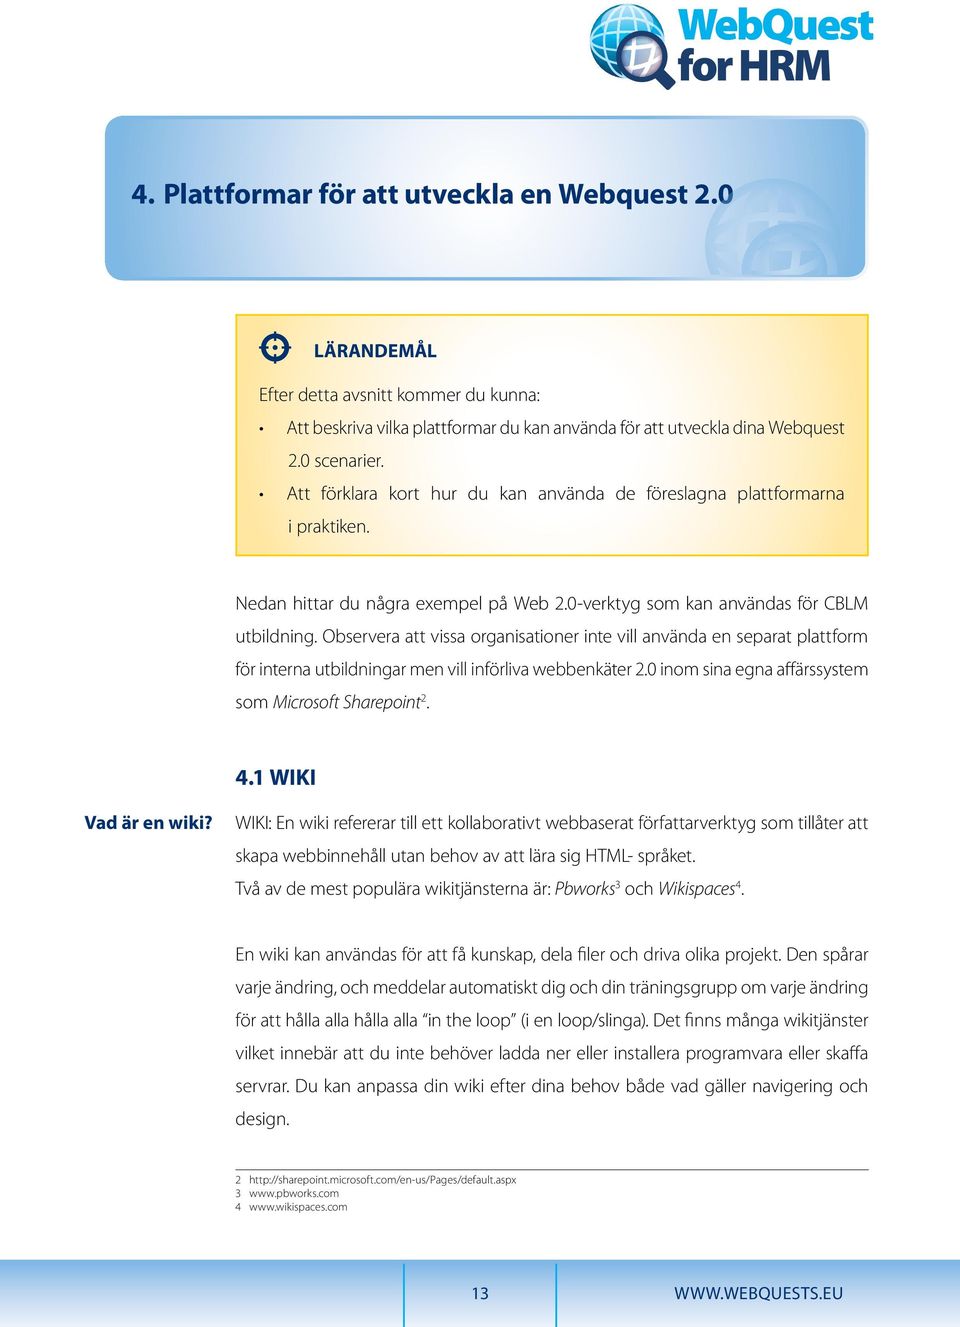 Observera att vissa organisationer inte vill använda en separat plattform för interna utbildningar men vill införliva webbenkäter 2.0 inom sina egna affärssystem som Microsoft Sharepoint 2. 4.